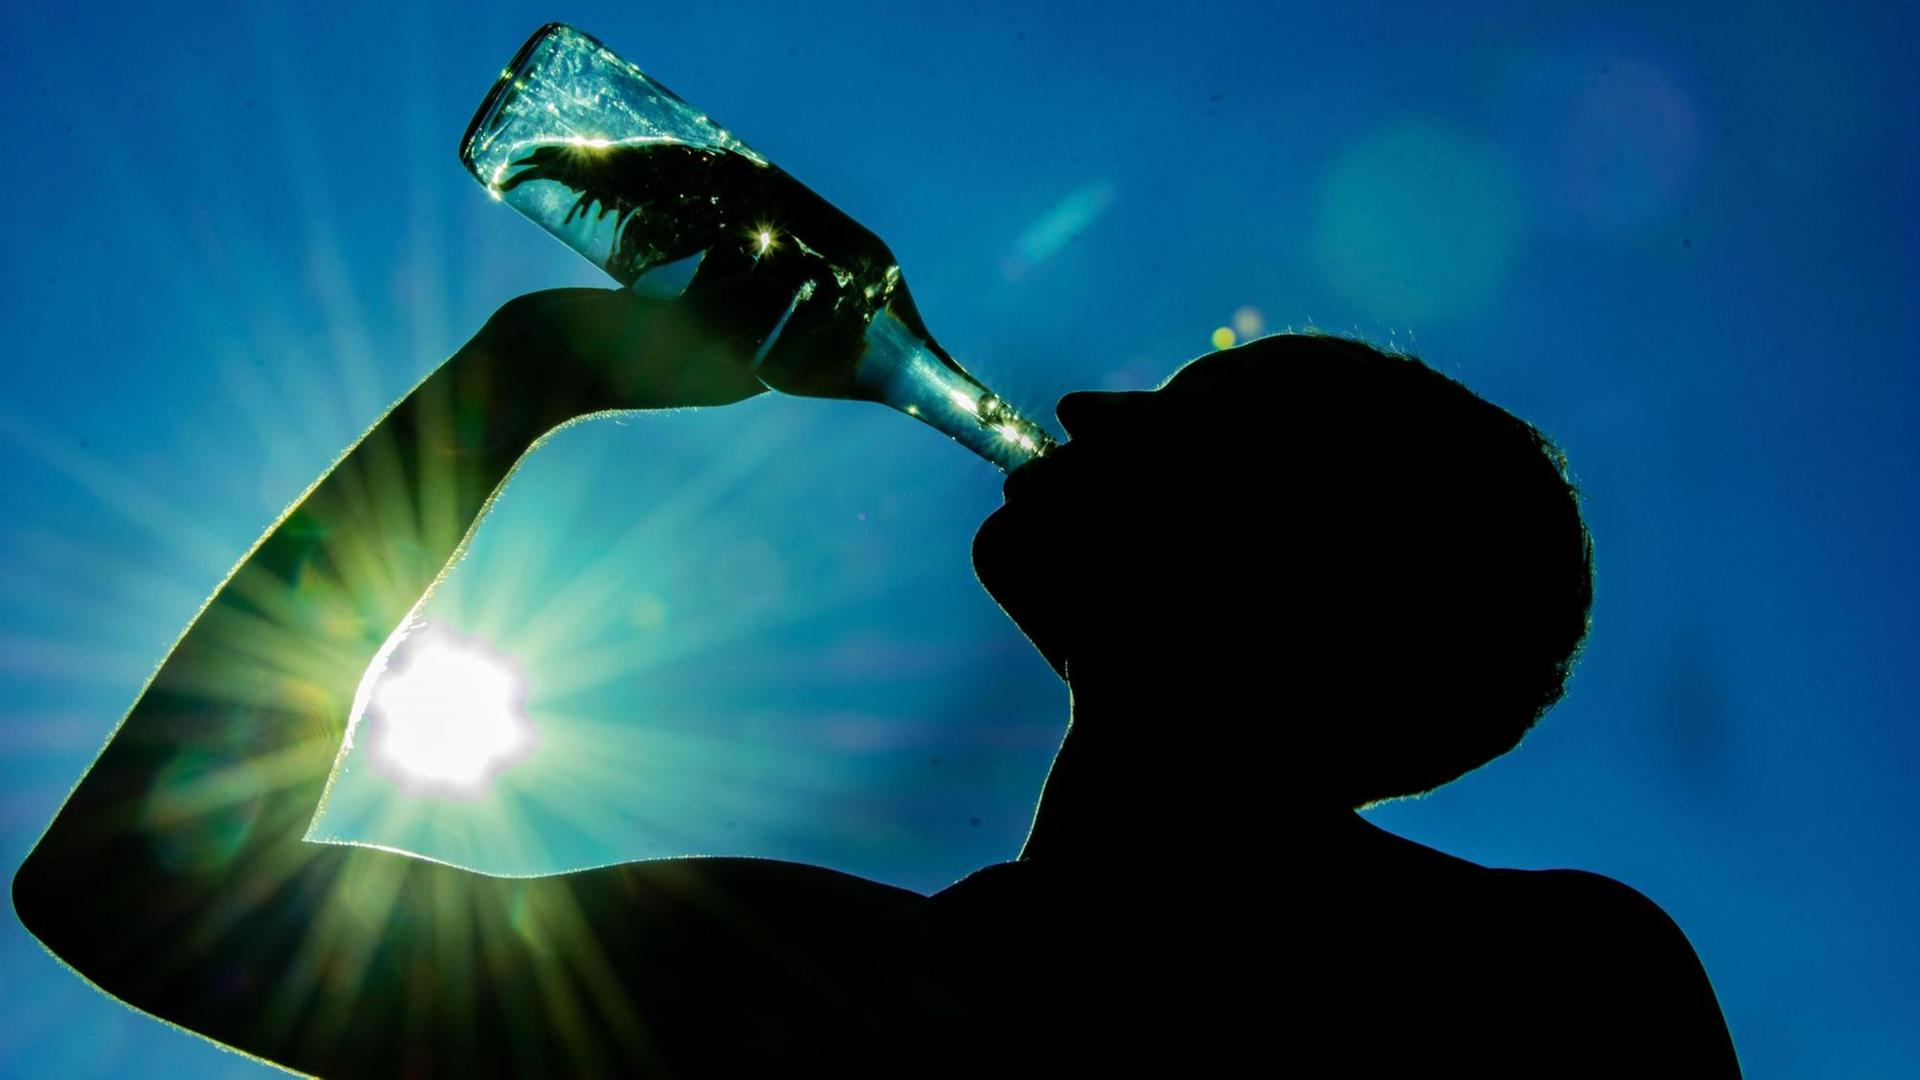 Ein Mann trinkt aus einer Wasser-Flasche. Durch seinen Arm scheint die Sonne.